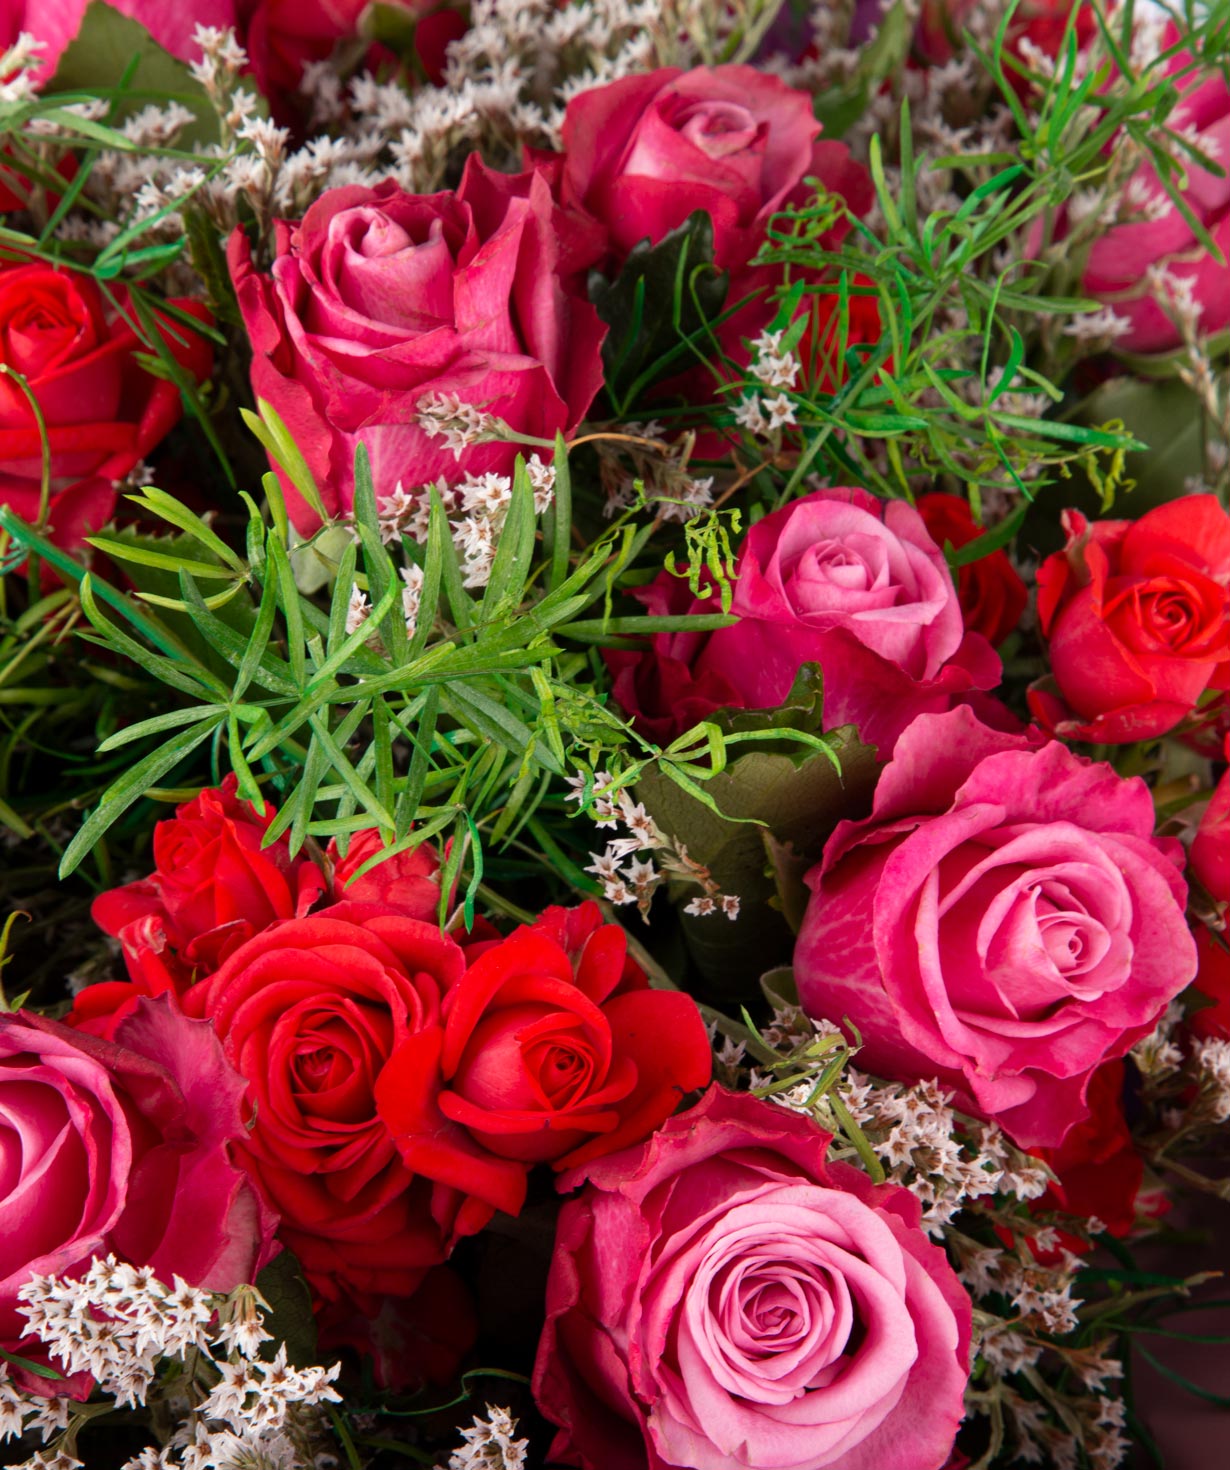 Ծաղկեփունջ «Օրհուս»  վարդերով և դաշտային ծաղիկներով